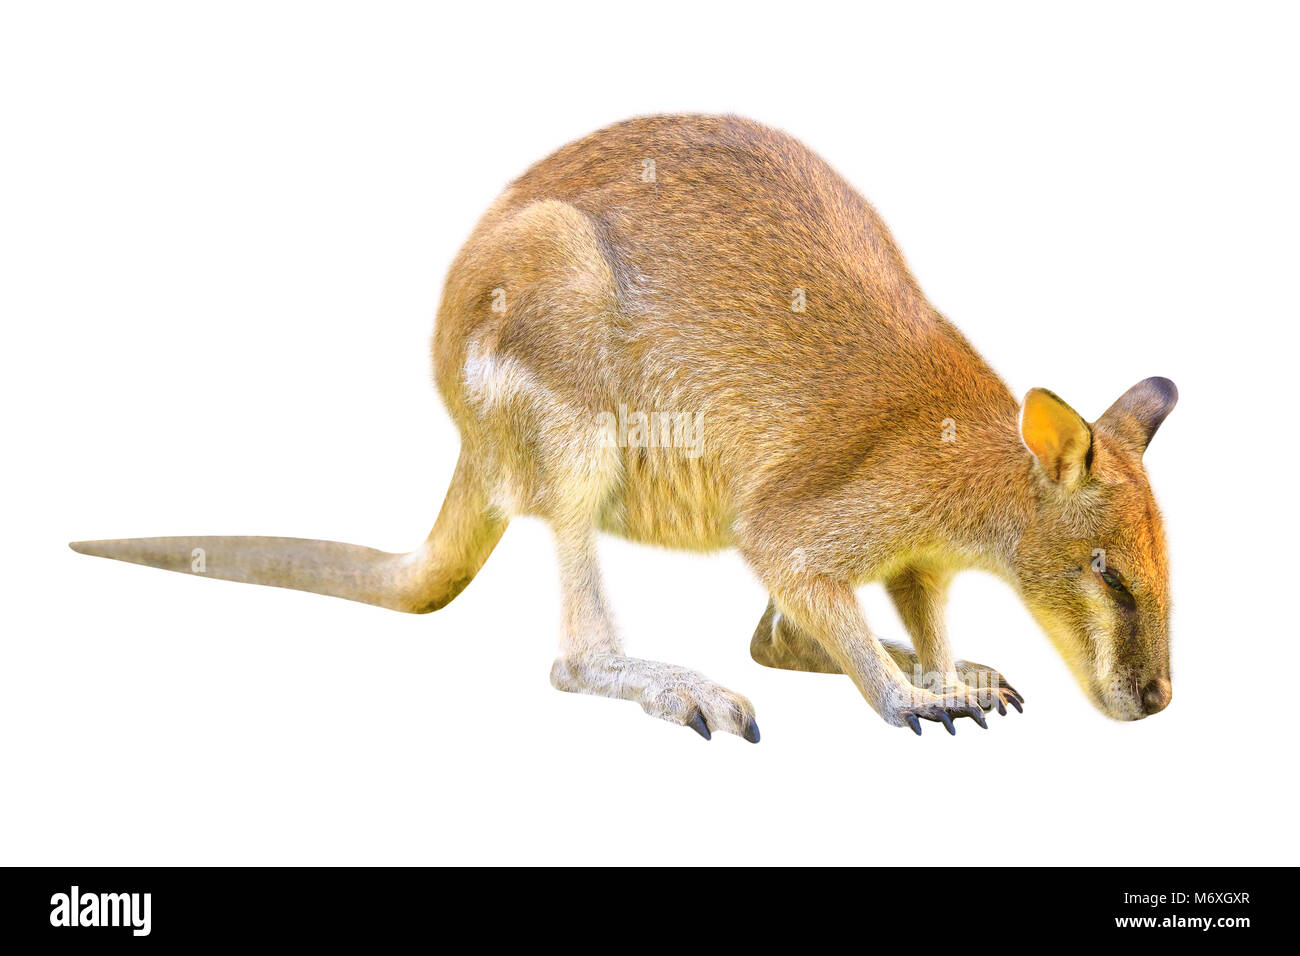 Macropus Rufogriseus Wallaby, australien, side view isolé sur fond blanc. Le Wallaby est un marsupial de la famille des Macropodidae dont la taille n'est pas suffisamment grand pour être considéré comme un kangourou. Banque D'Images